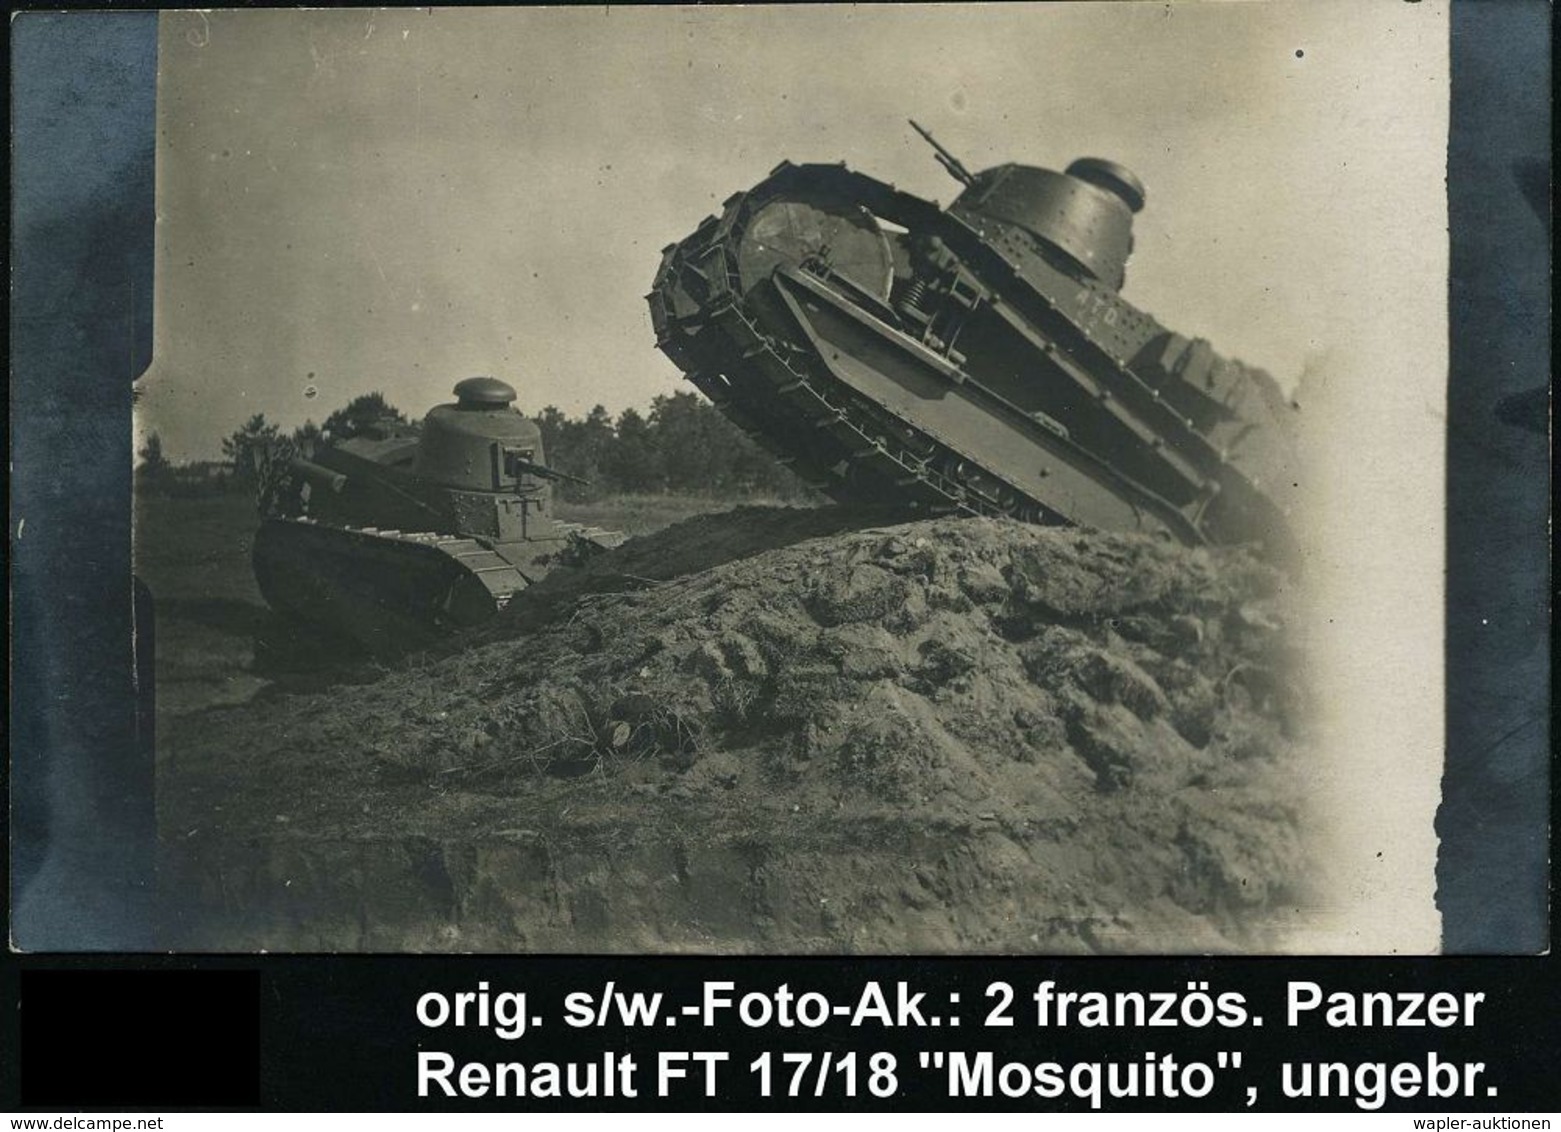 GEPANZERTE KRAFTFAHRZEUGE / PANZER : FRANKREICH 1917 S/w.-Foto-Ak: 2 Französ. Panzer Renault "Mosquito FT 17/18" Bei Der - Autres (Terre)